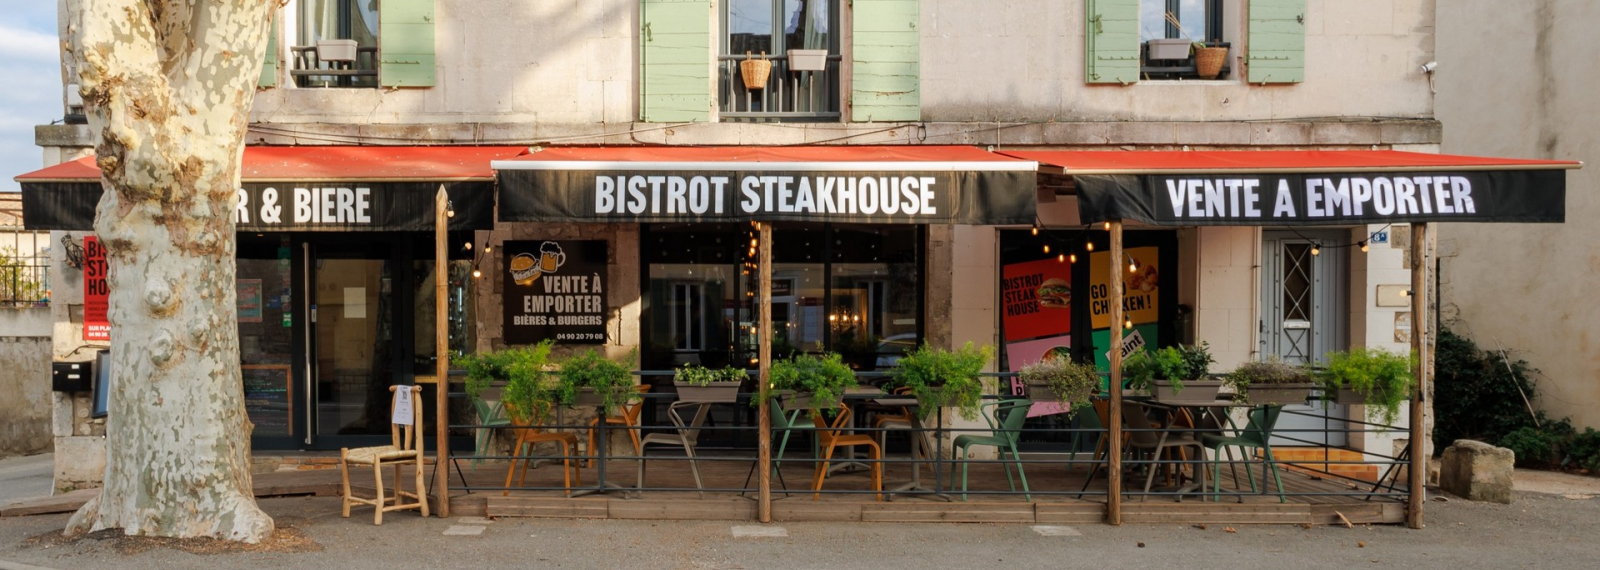 Bistrot Steak House à Saint-Rémy-de-Provence